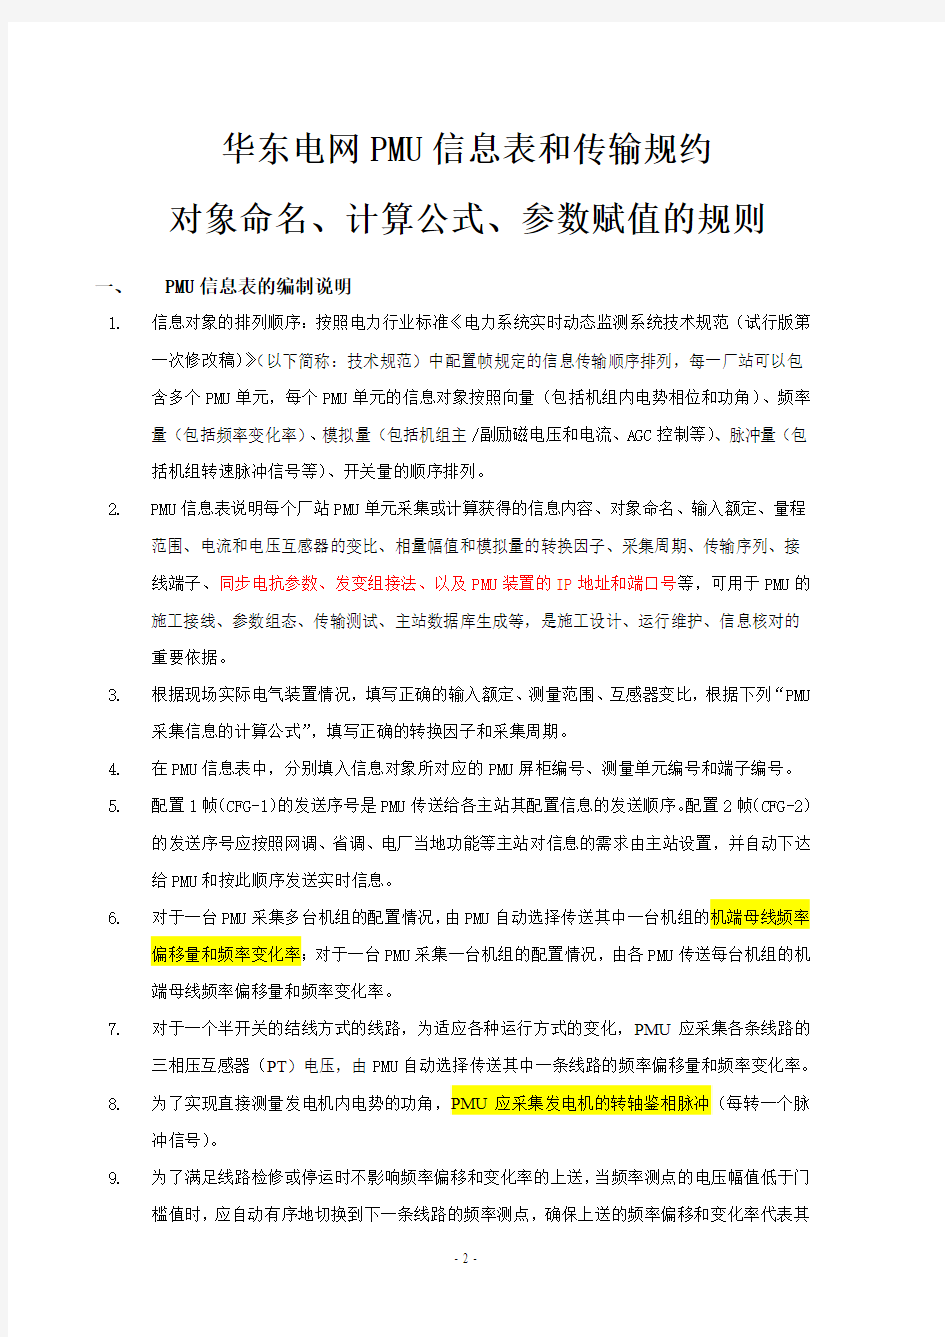 华东电网PMU信息表命名规则